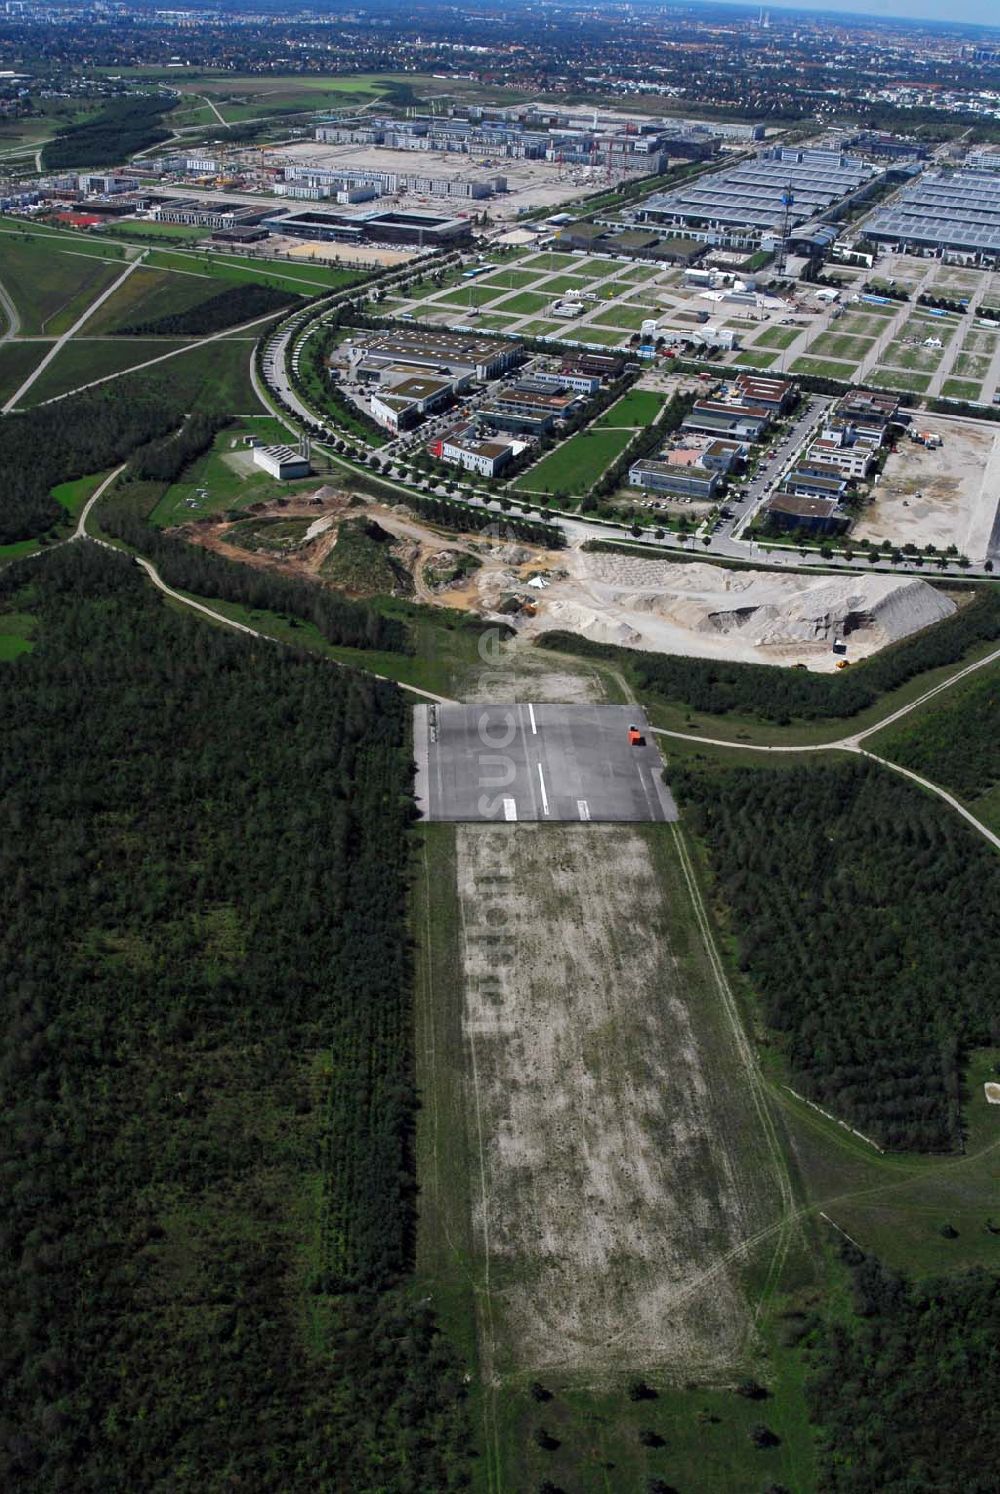 Luftaufnahme Riem - Blick auf Flughafen Müchen-Riem und Teile der alten Landebahn